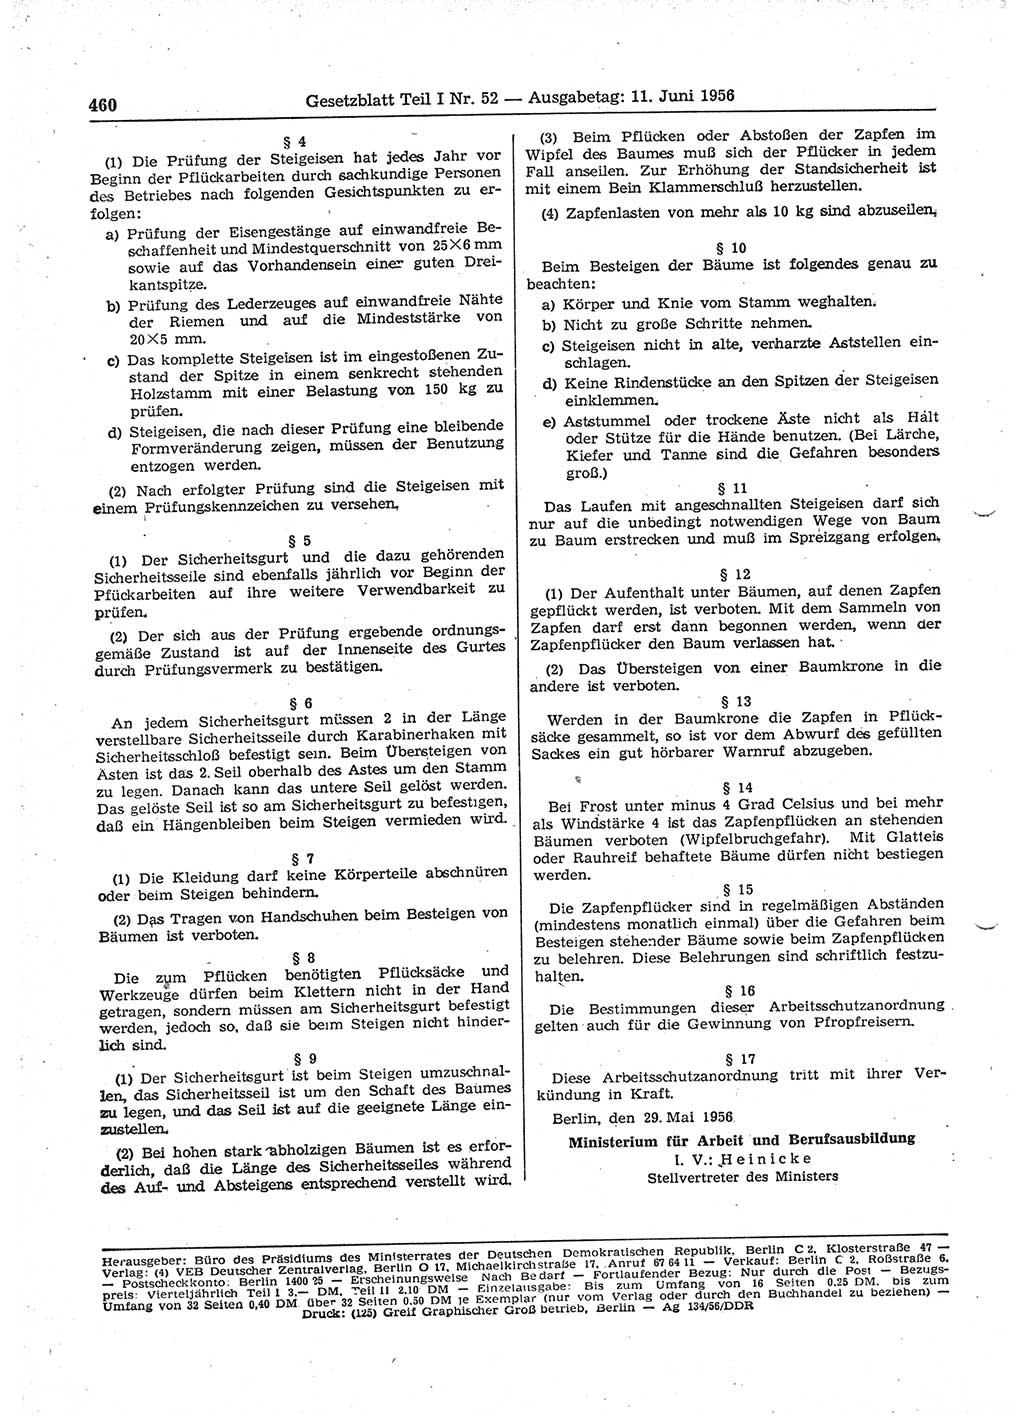 Gesetzblatt (GBl.) der Deutschen Demokratischen Republik (DDR) Teil Ⅰ 1956, Seite 460 (GBl. DDR Ⅰ 1956, S. 460)